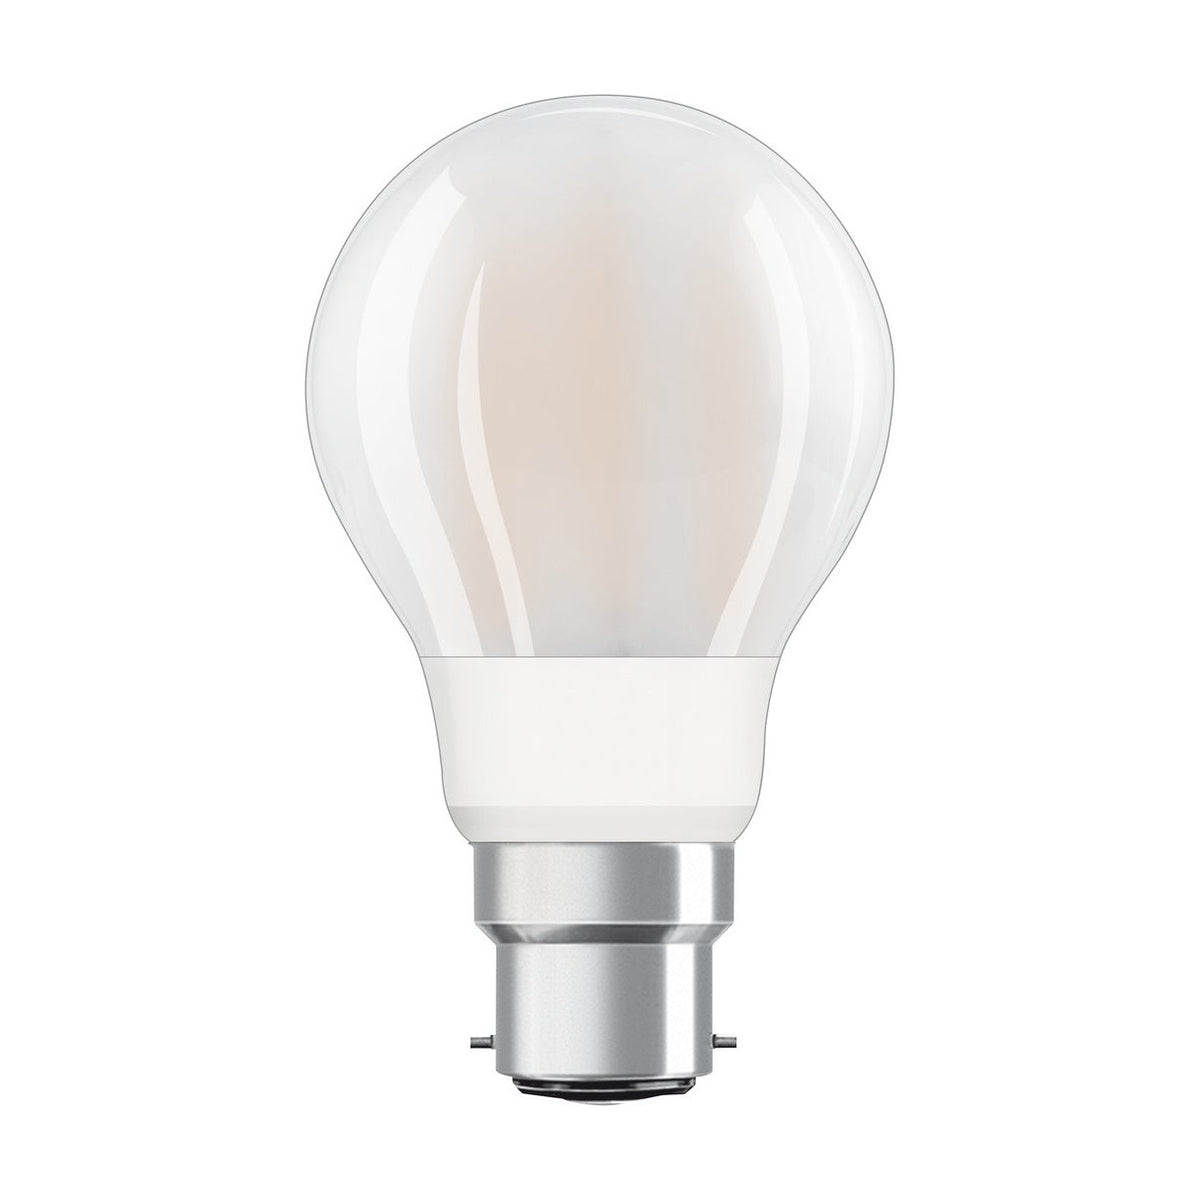 LEDVANCE Lampadina dalla forma classica a filamento con tecnologia WiFi, 6 W, bianco caldo, B22, confezione da 1